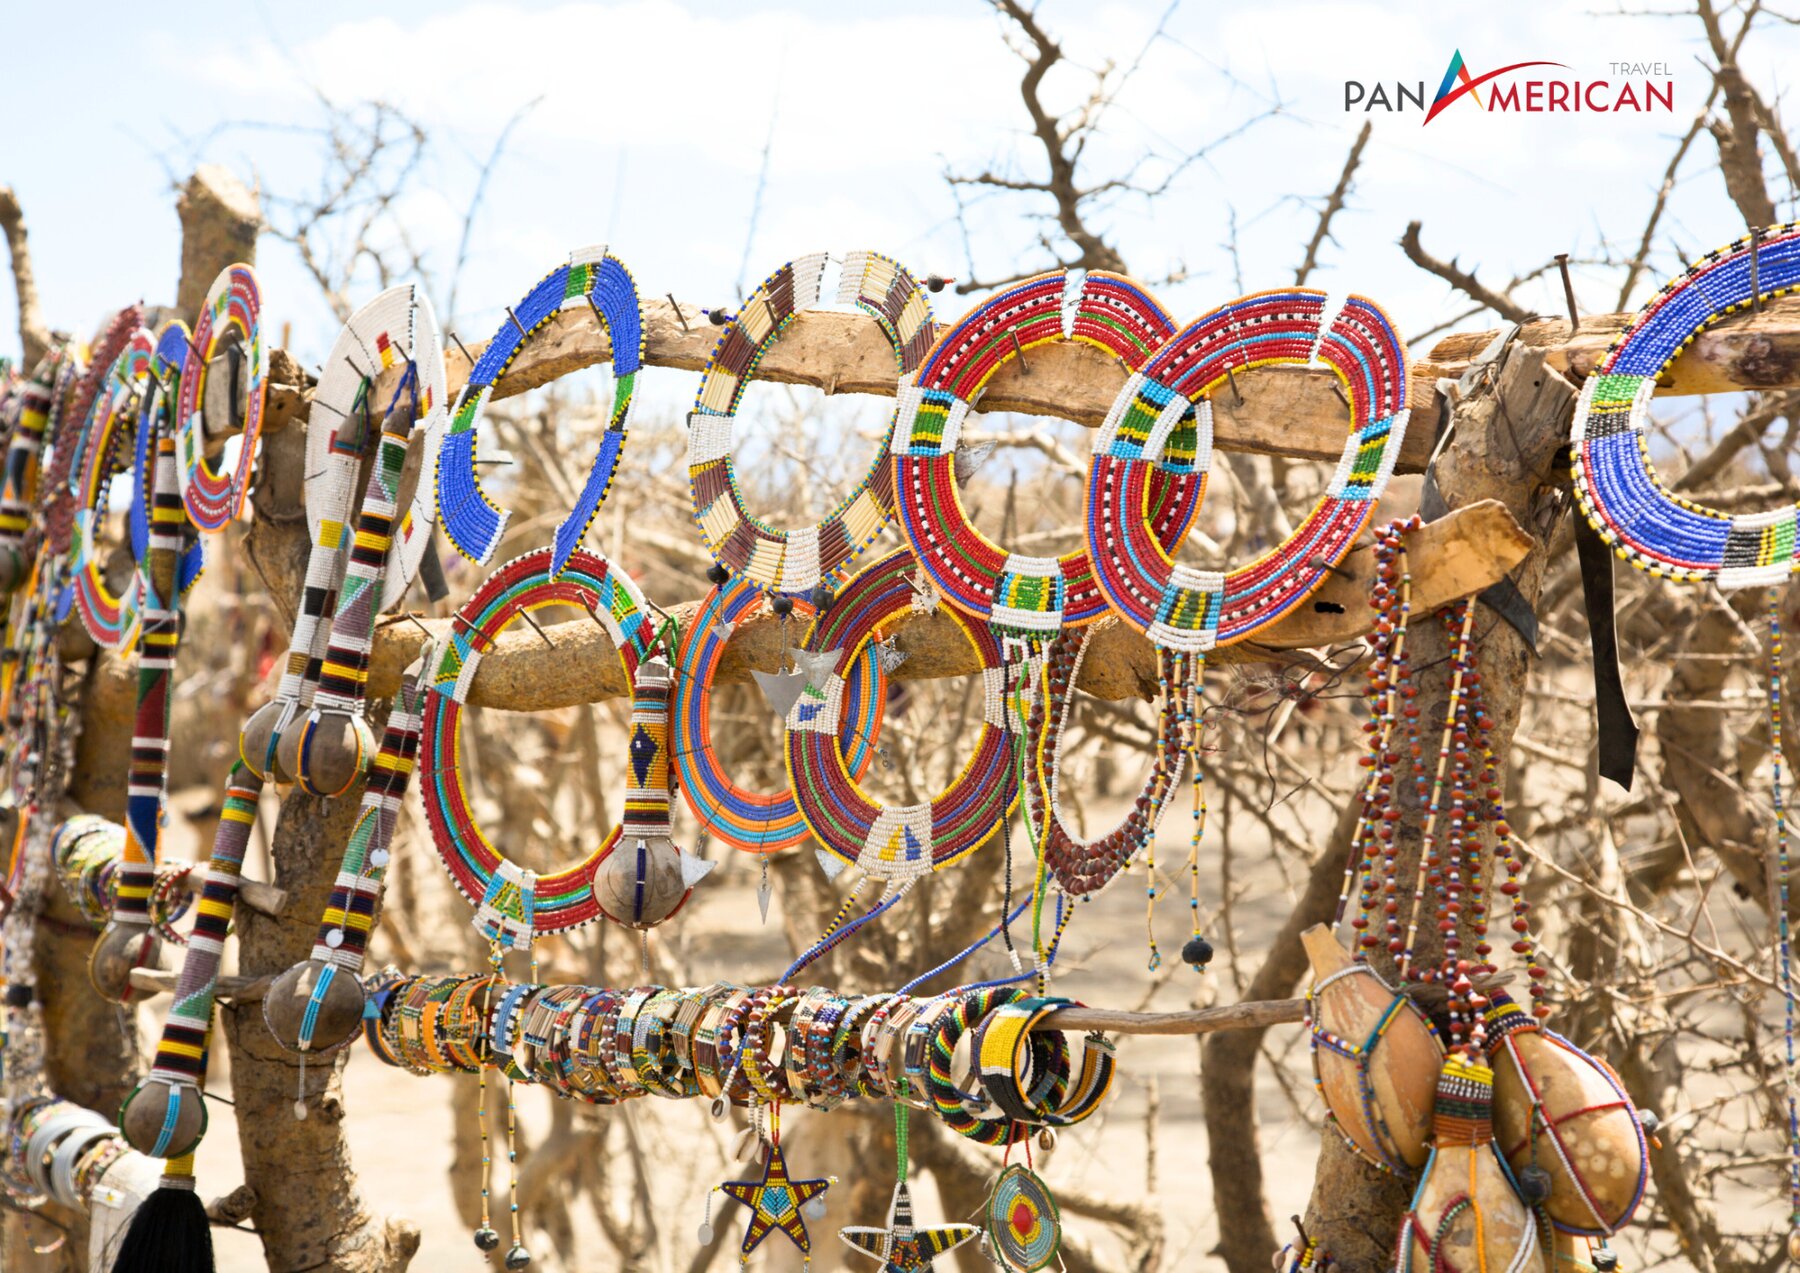 Đến với châu Phi quý vị có thể lựa chọn trang sức, vòng cổ làm quà 